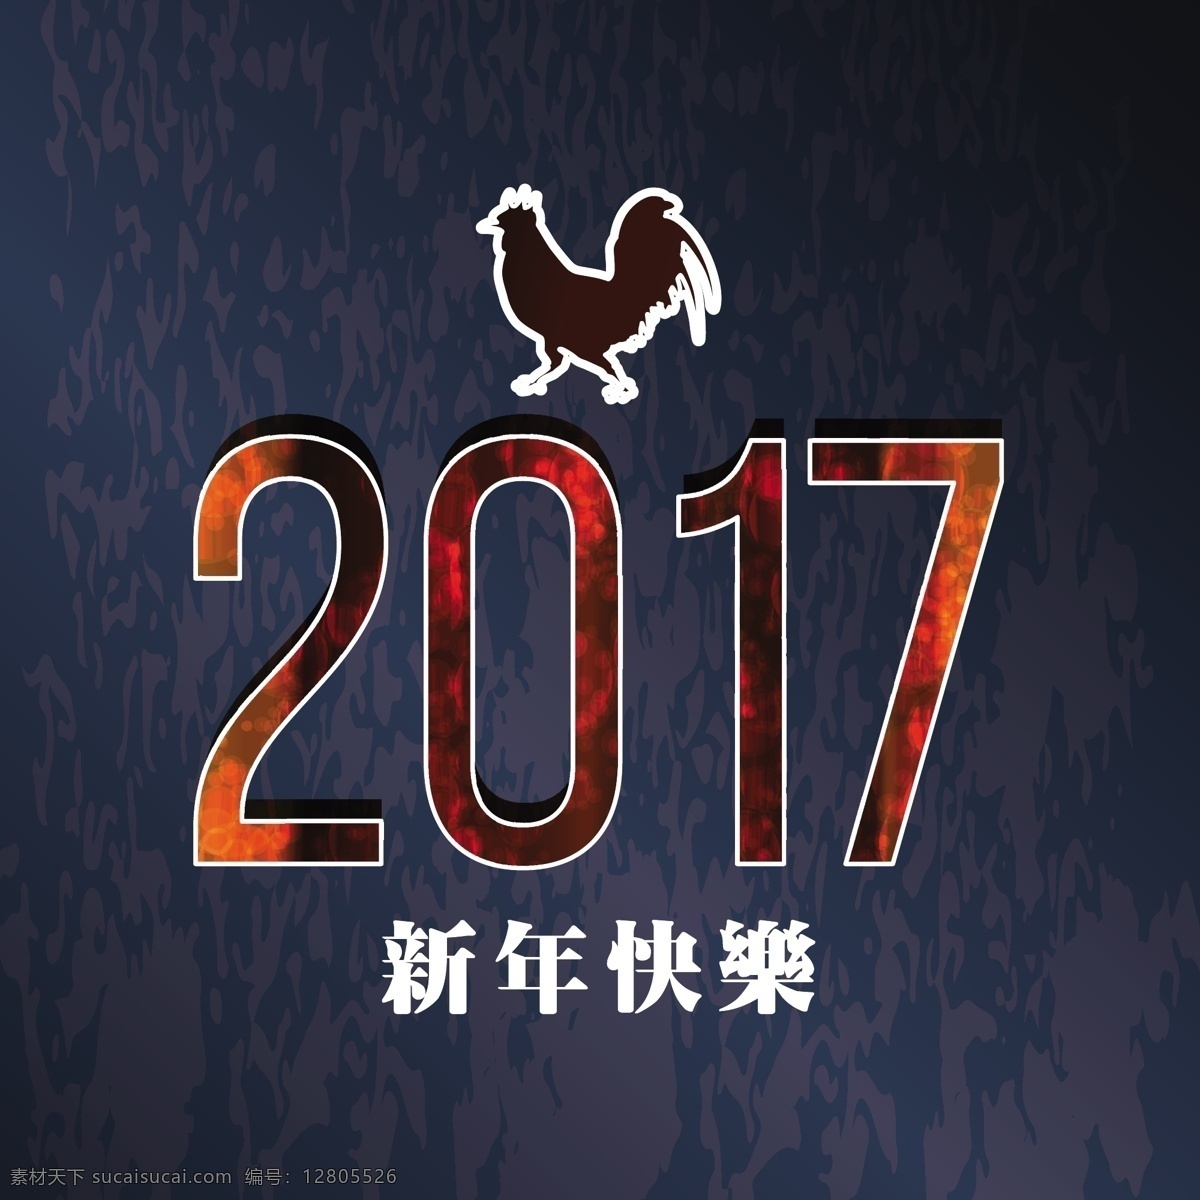 中国 新年 黑暗 背景 冬天 新的一年 2017 人 动物 庆祝 快乐 节日 事件 的背景下 公鸡 十二月 东方 今年 亚洲的节日